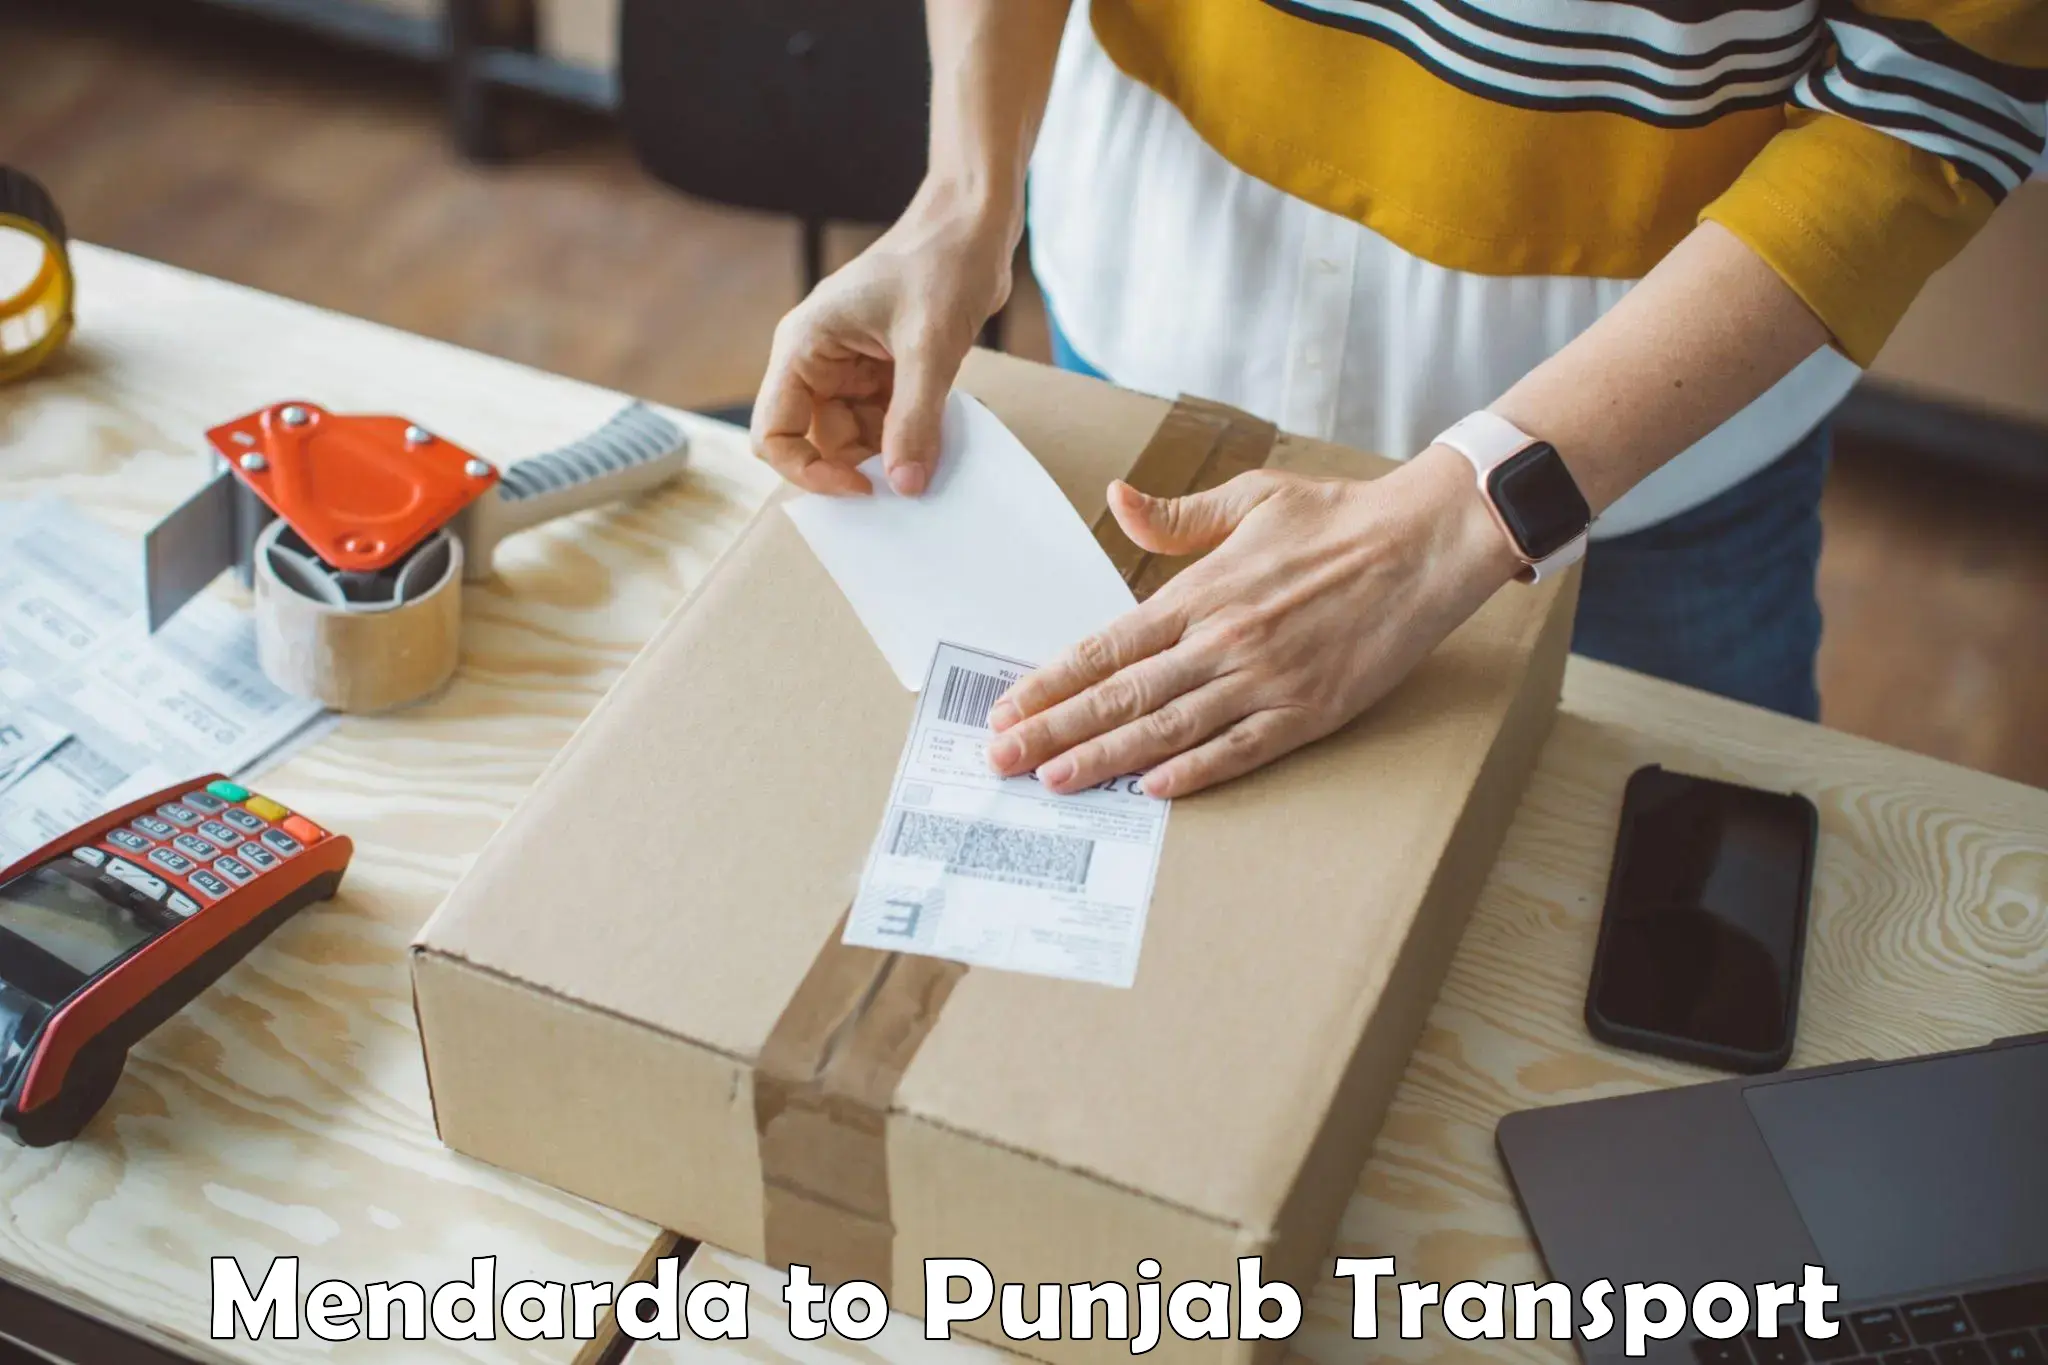 Domestic goods transportation services Mendarda to Rupnagar